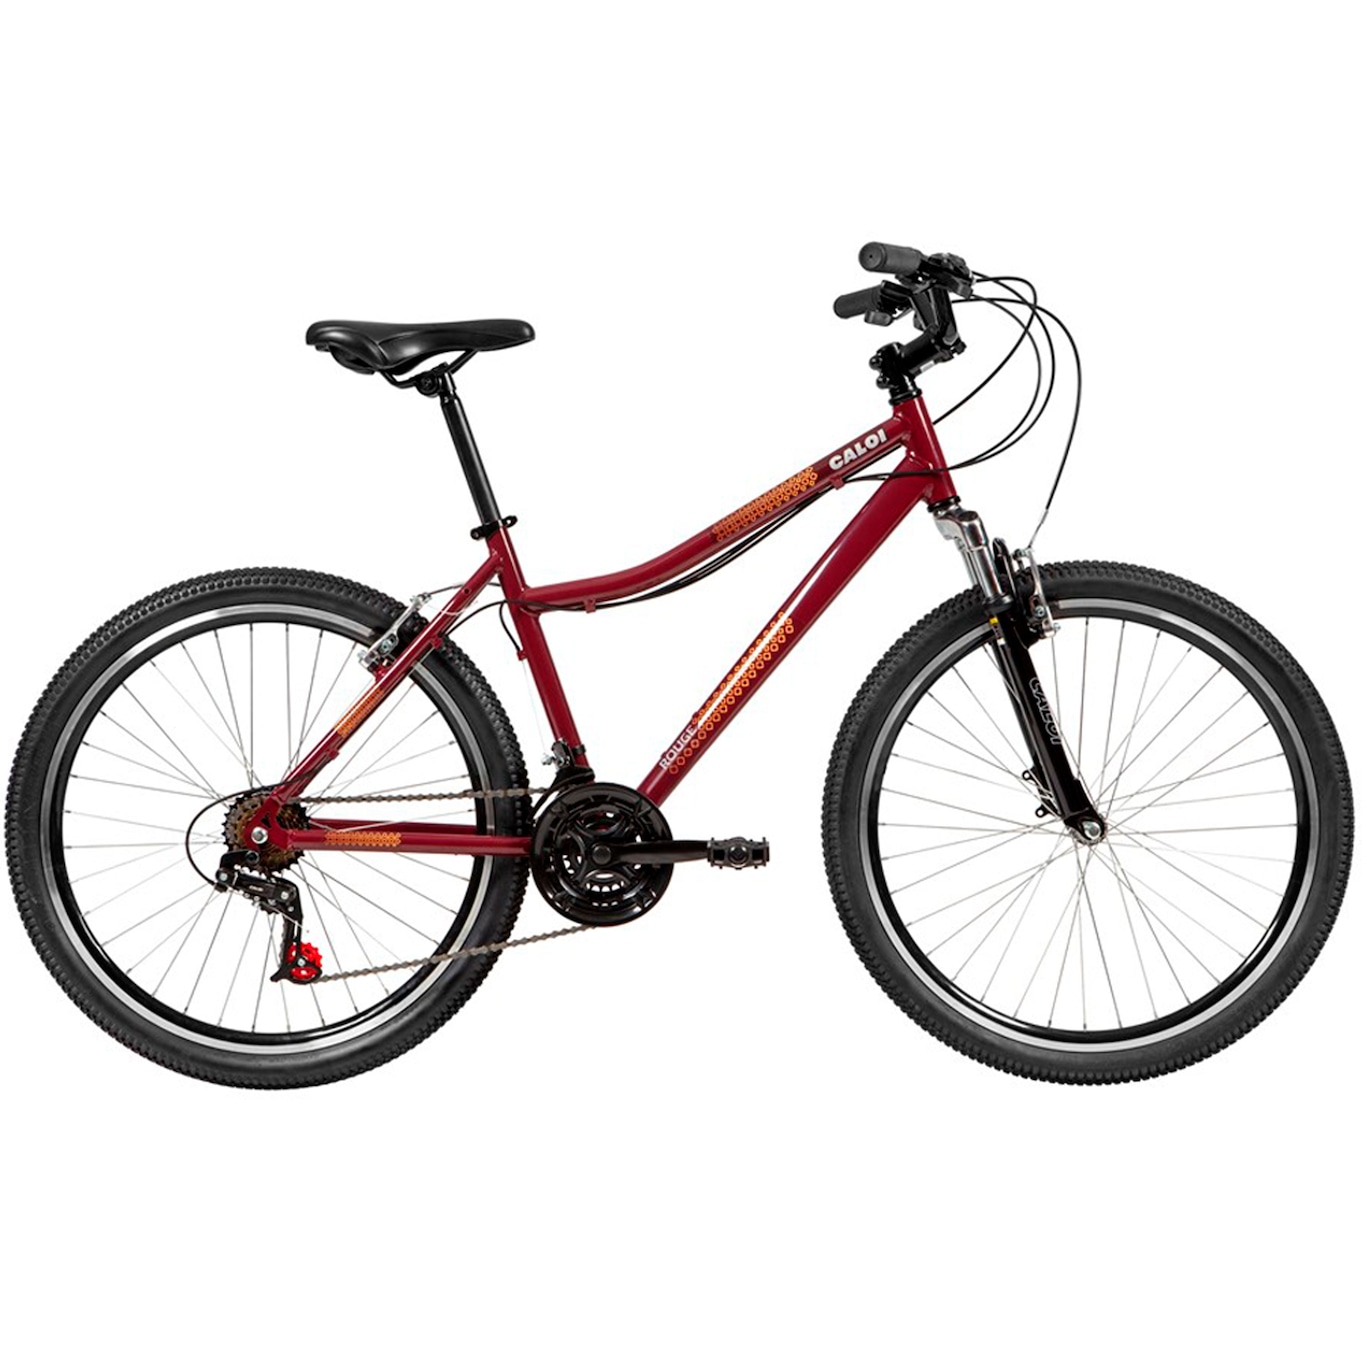 Bicicleta Caloi Rouge - Aro 26 - Freio V-Brake - Adulto - Foto 1